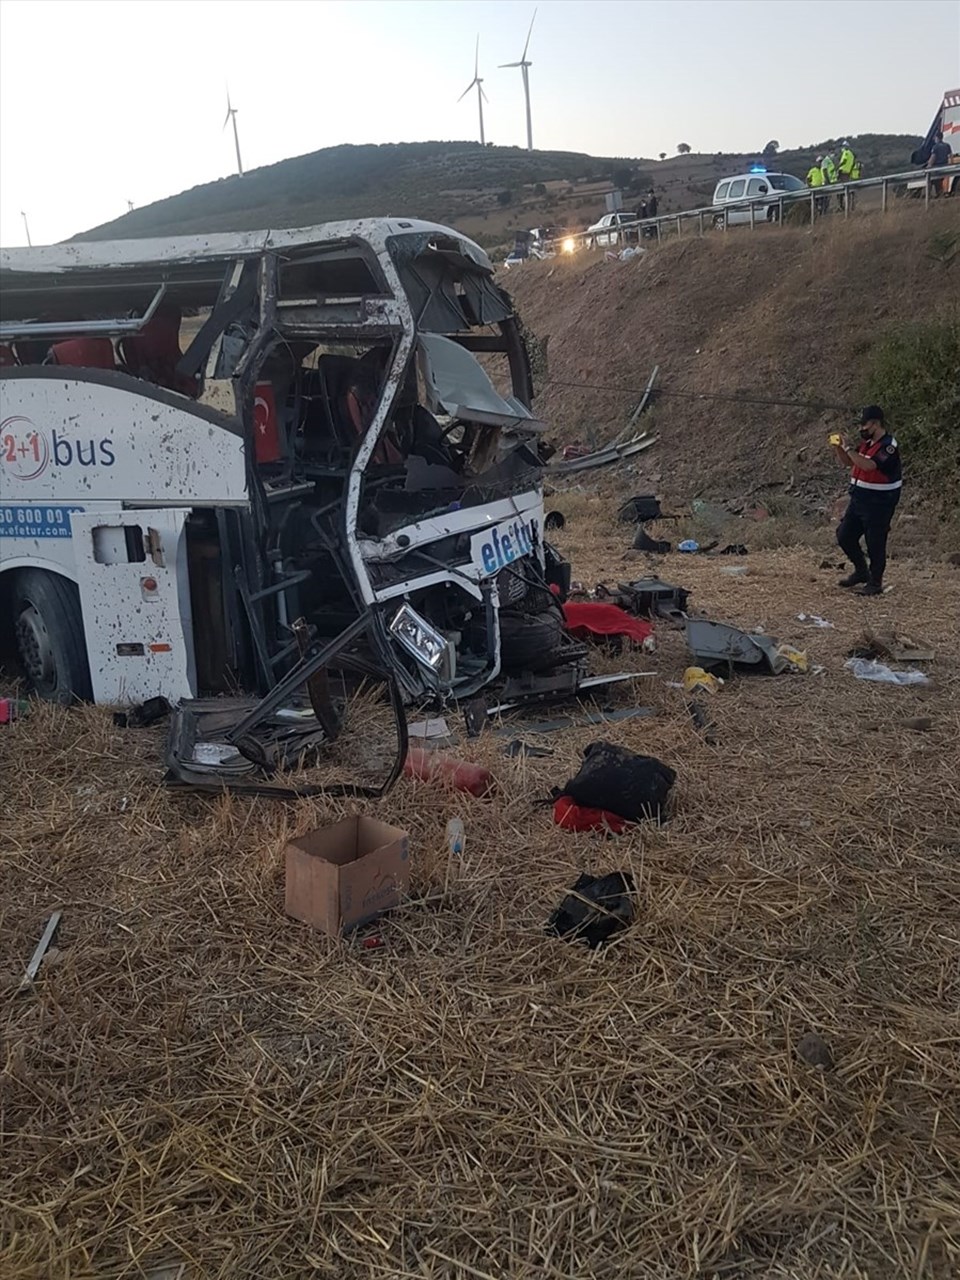 SON DAKİKA HABERİ: Balıkesir’de otobüs yoldan çıkarak takla attı: 15 kişi hayatını kaybetti - 1